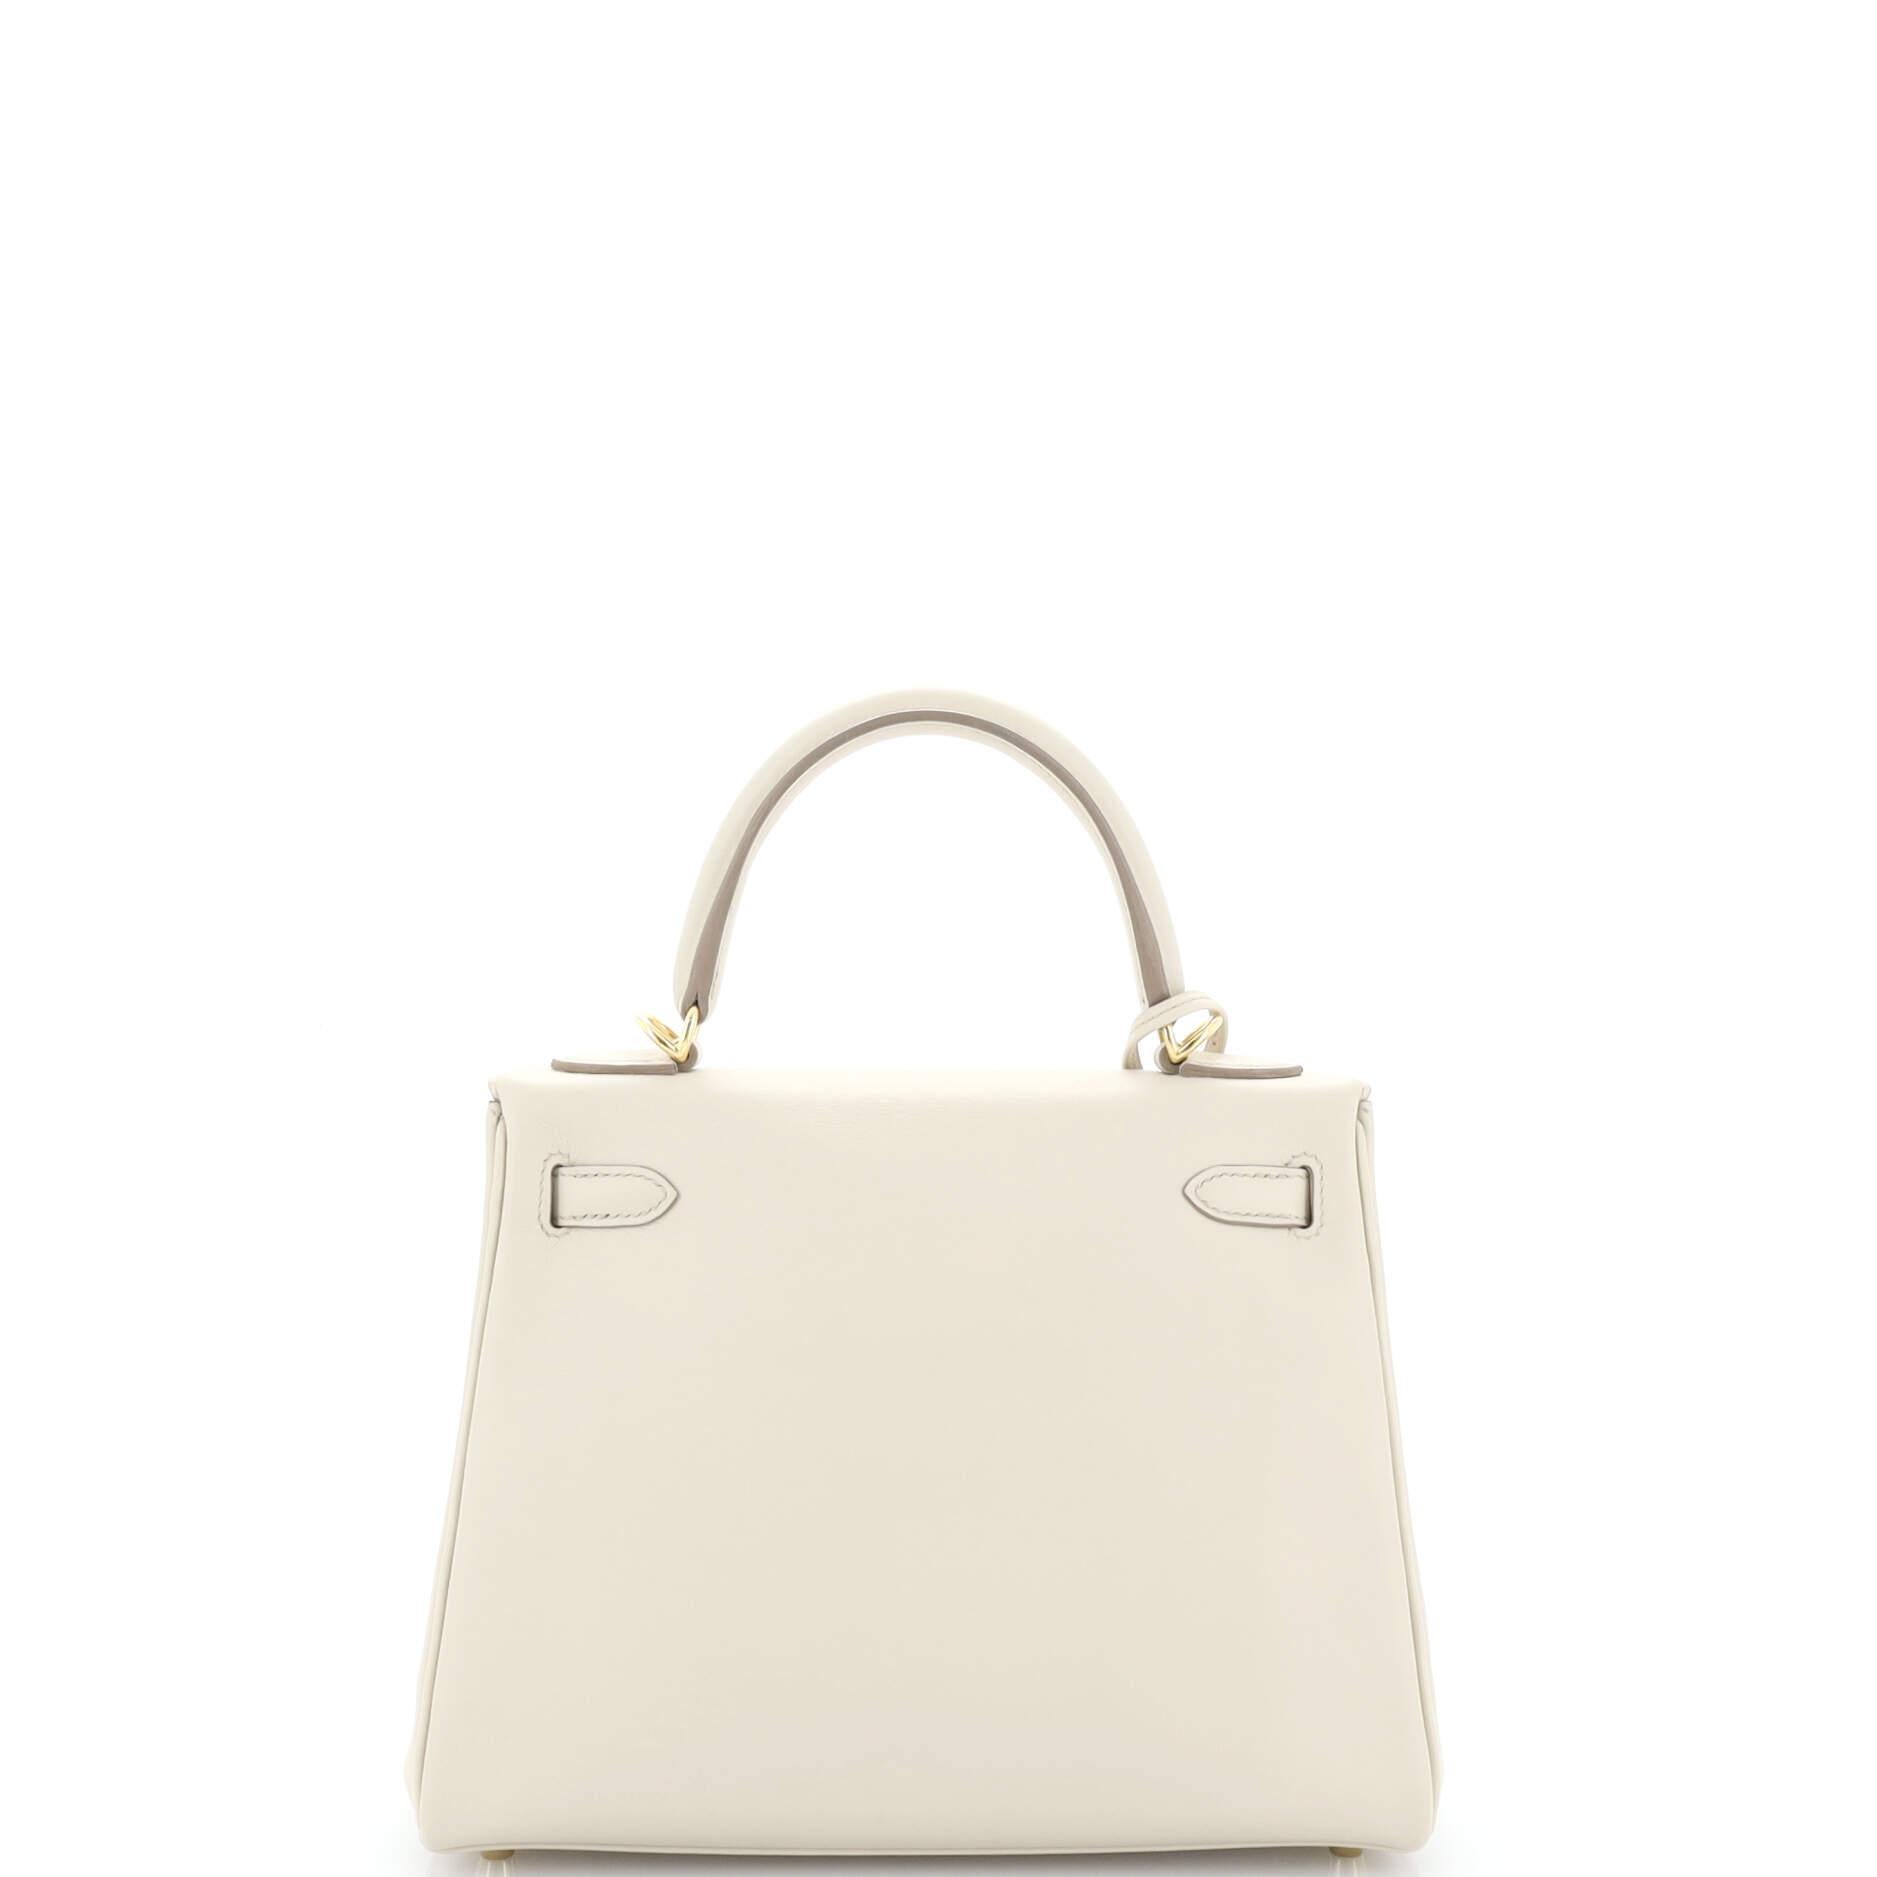 Women's or Men's Hermes Kelly Handbag Light Swift with Gold Hardware 25